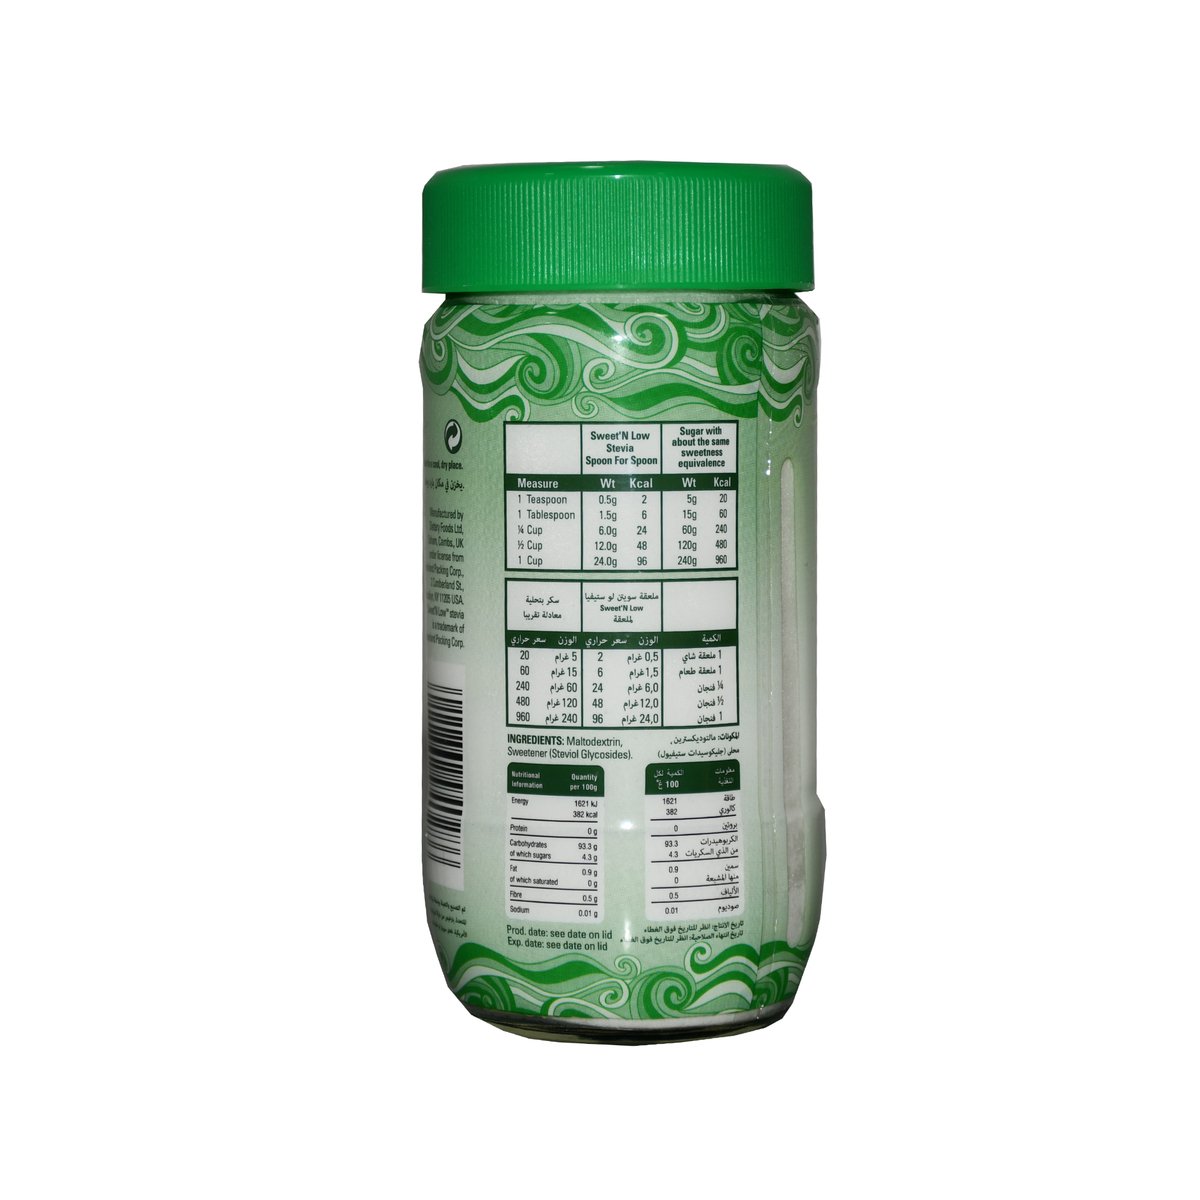 Sweet N Low Stevia Low Calorie Sweetener Jar 40 g